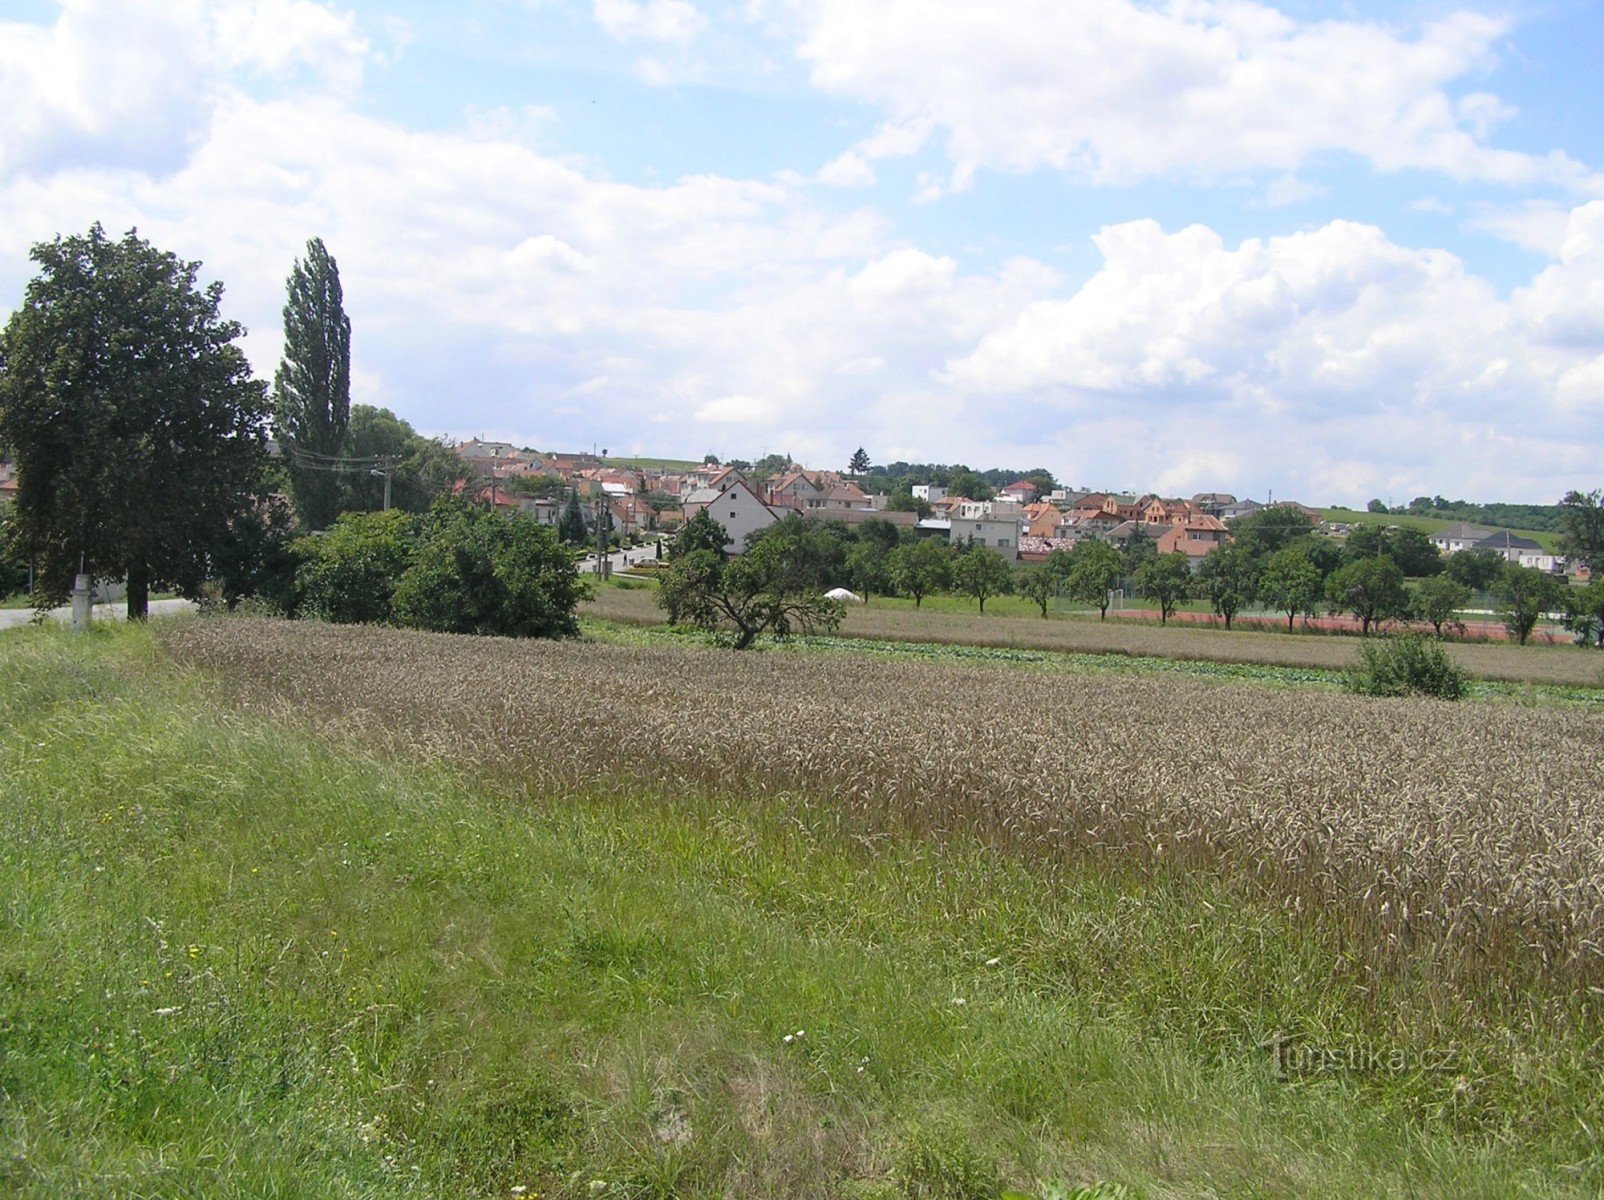 Únanov peste drum de Výrovice (august 2006)